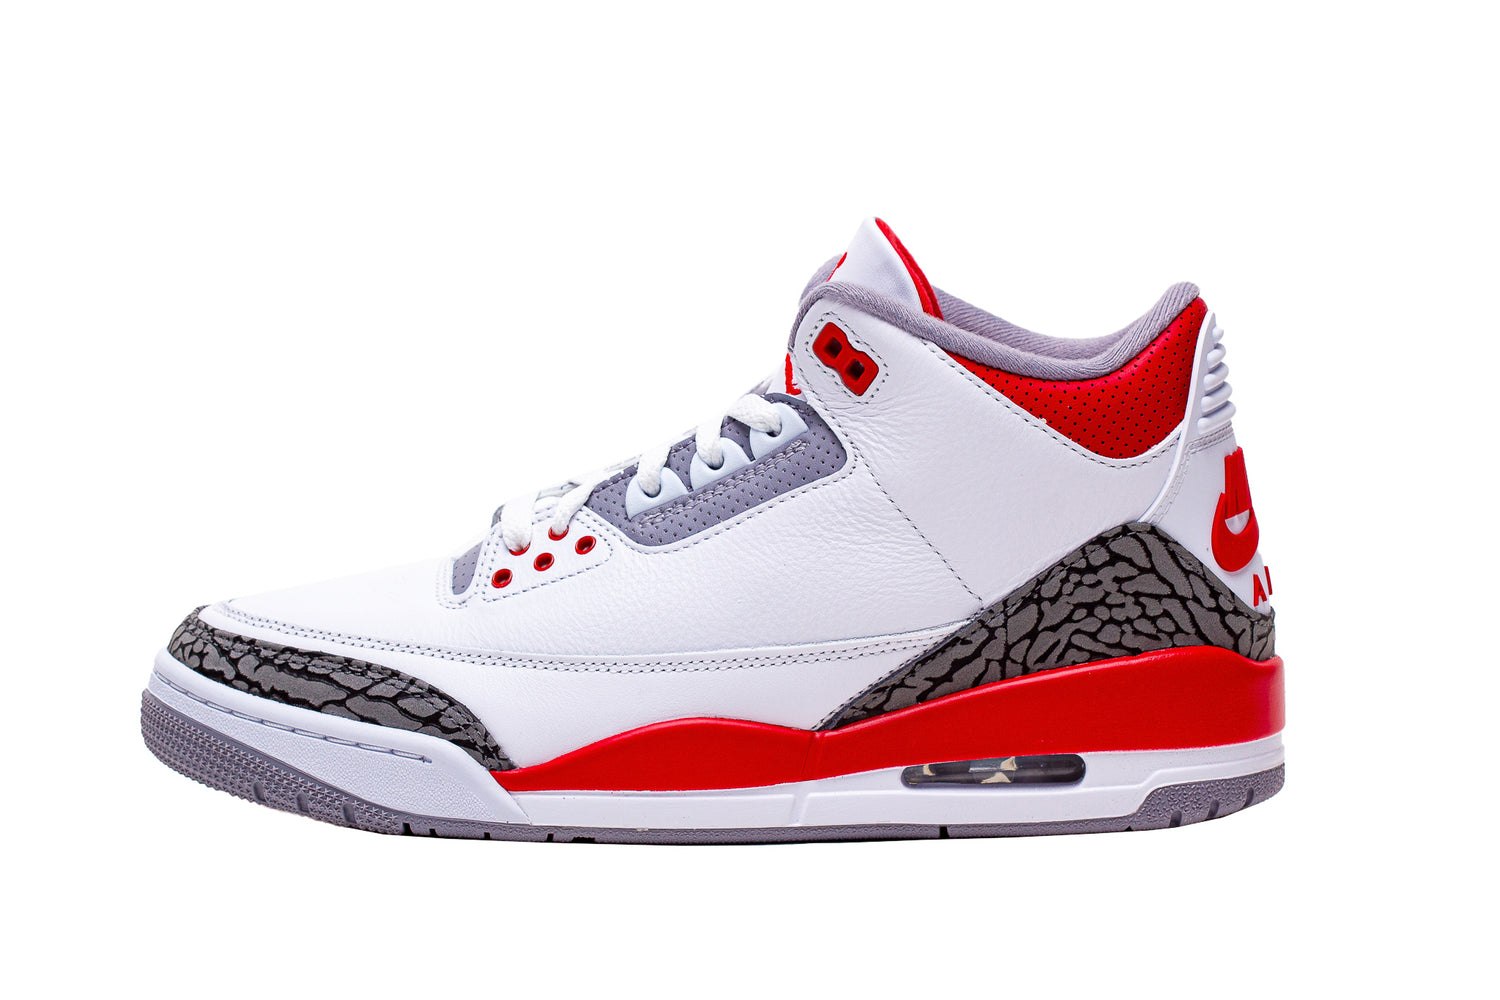 Air Jordan 3 Retro OG "Fire Red" - Men